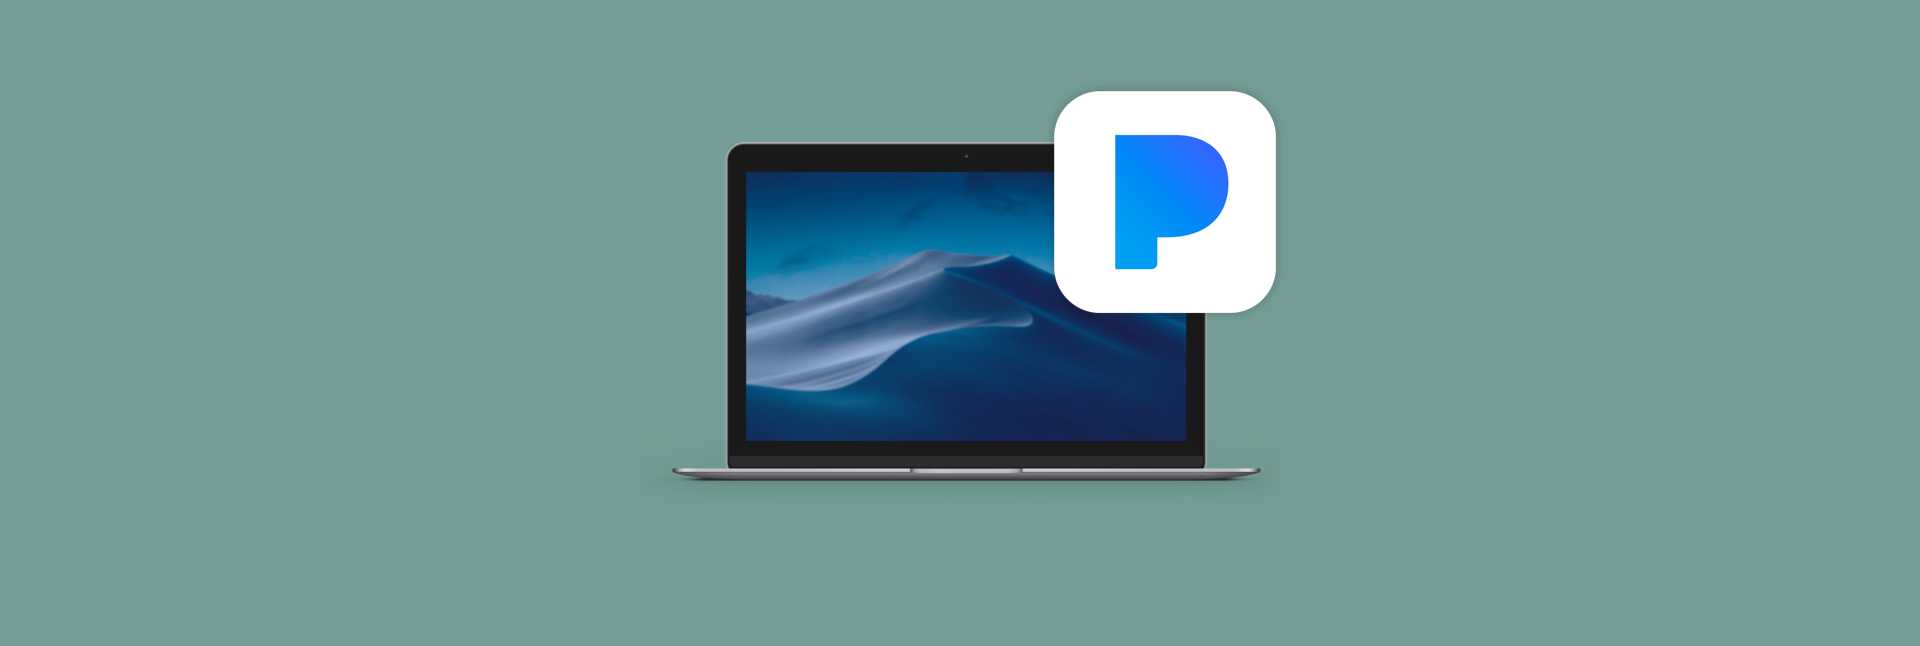 pandora download for mac os x 2018